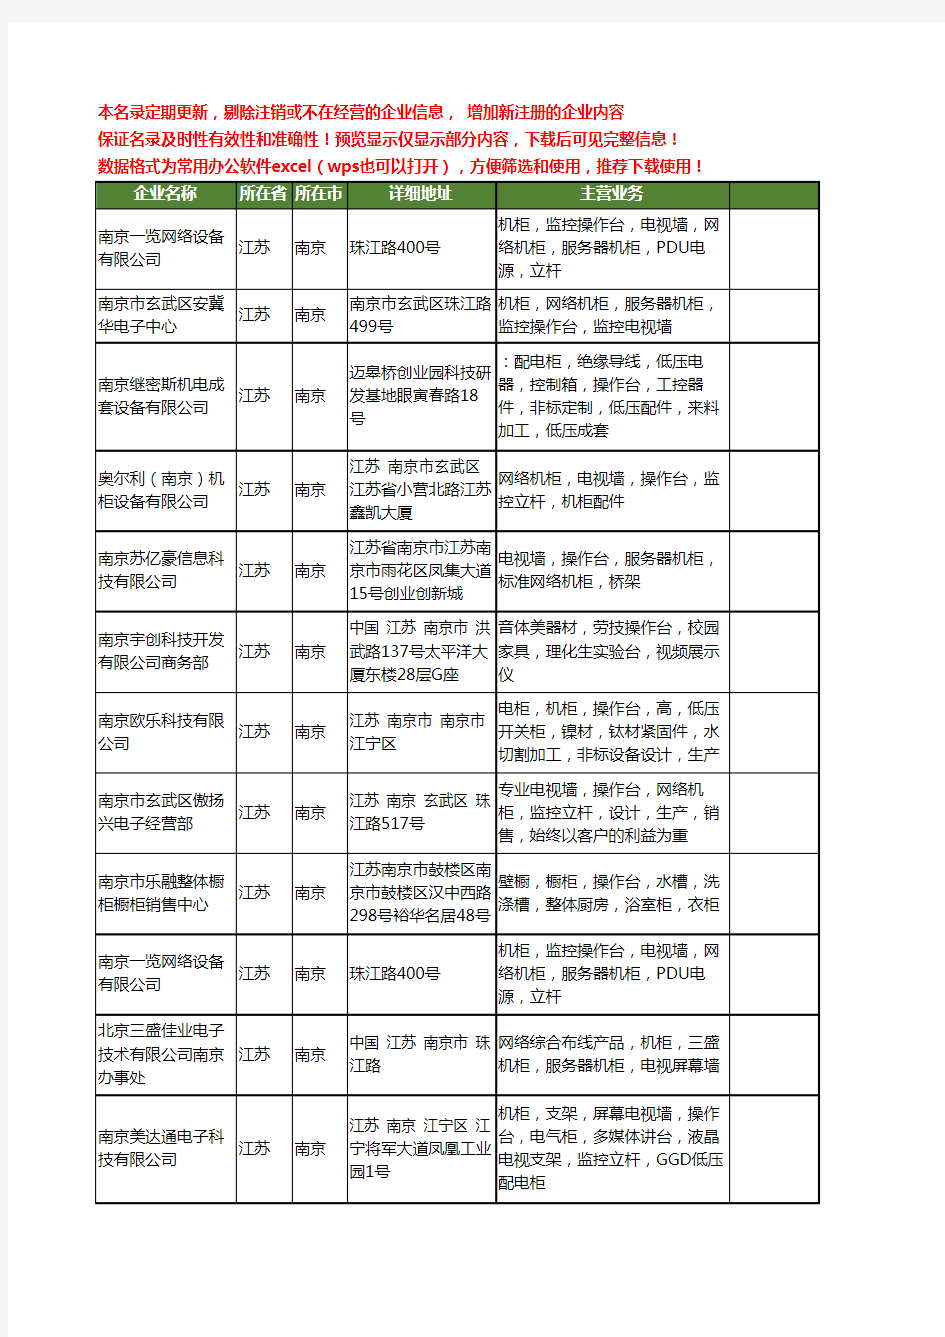 新版江苏省南京操作台工商企业公司商家名录名单联系方式大全57家